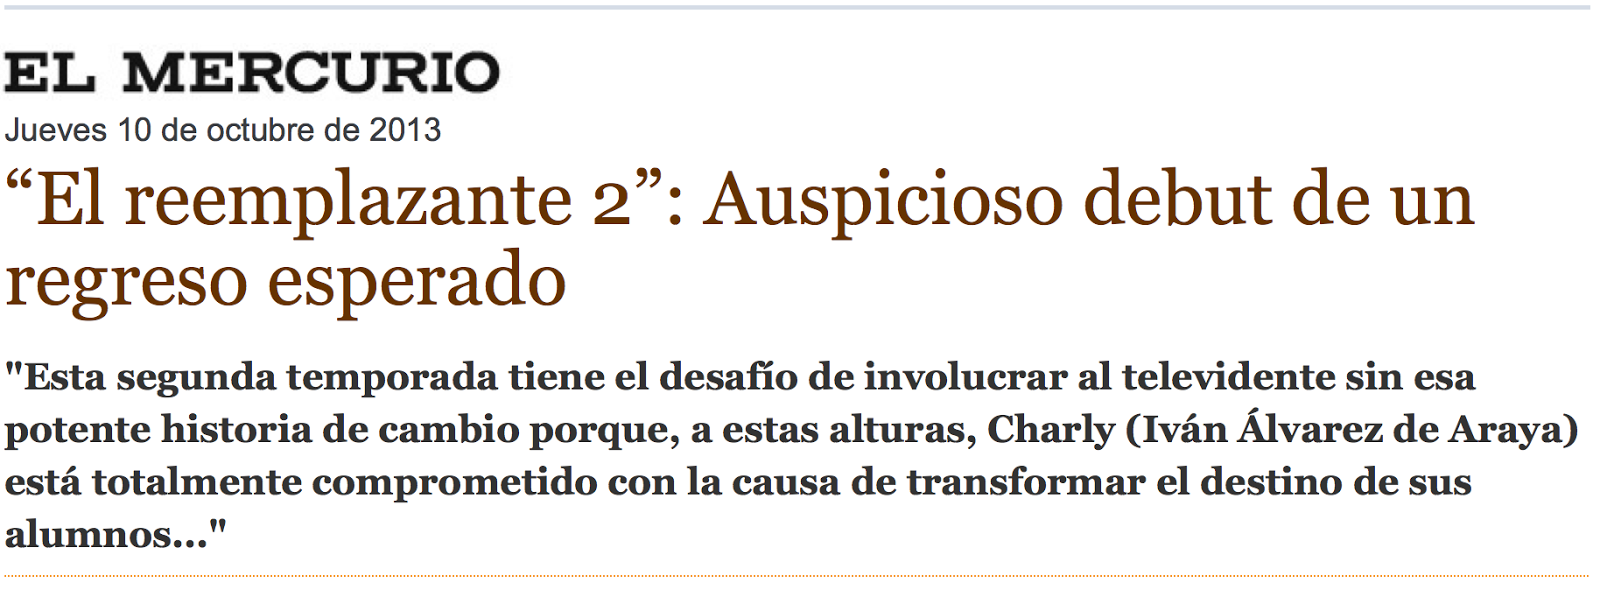 http://www.elmercurio.com/blogs/2013/10/10/15964/El-reemplazante-2-Auspicioso-debut-de-un-regreso-esperado.aspx